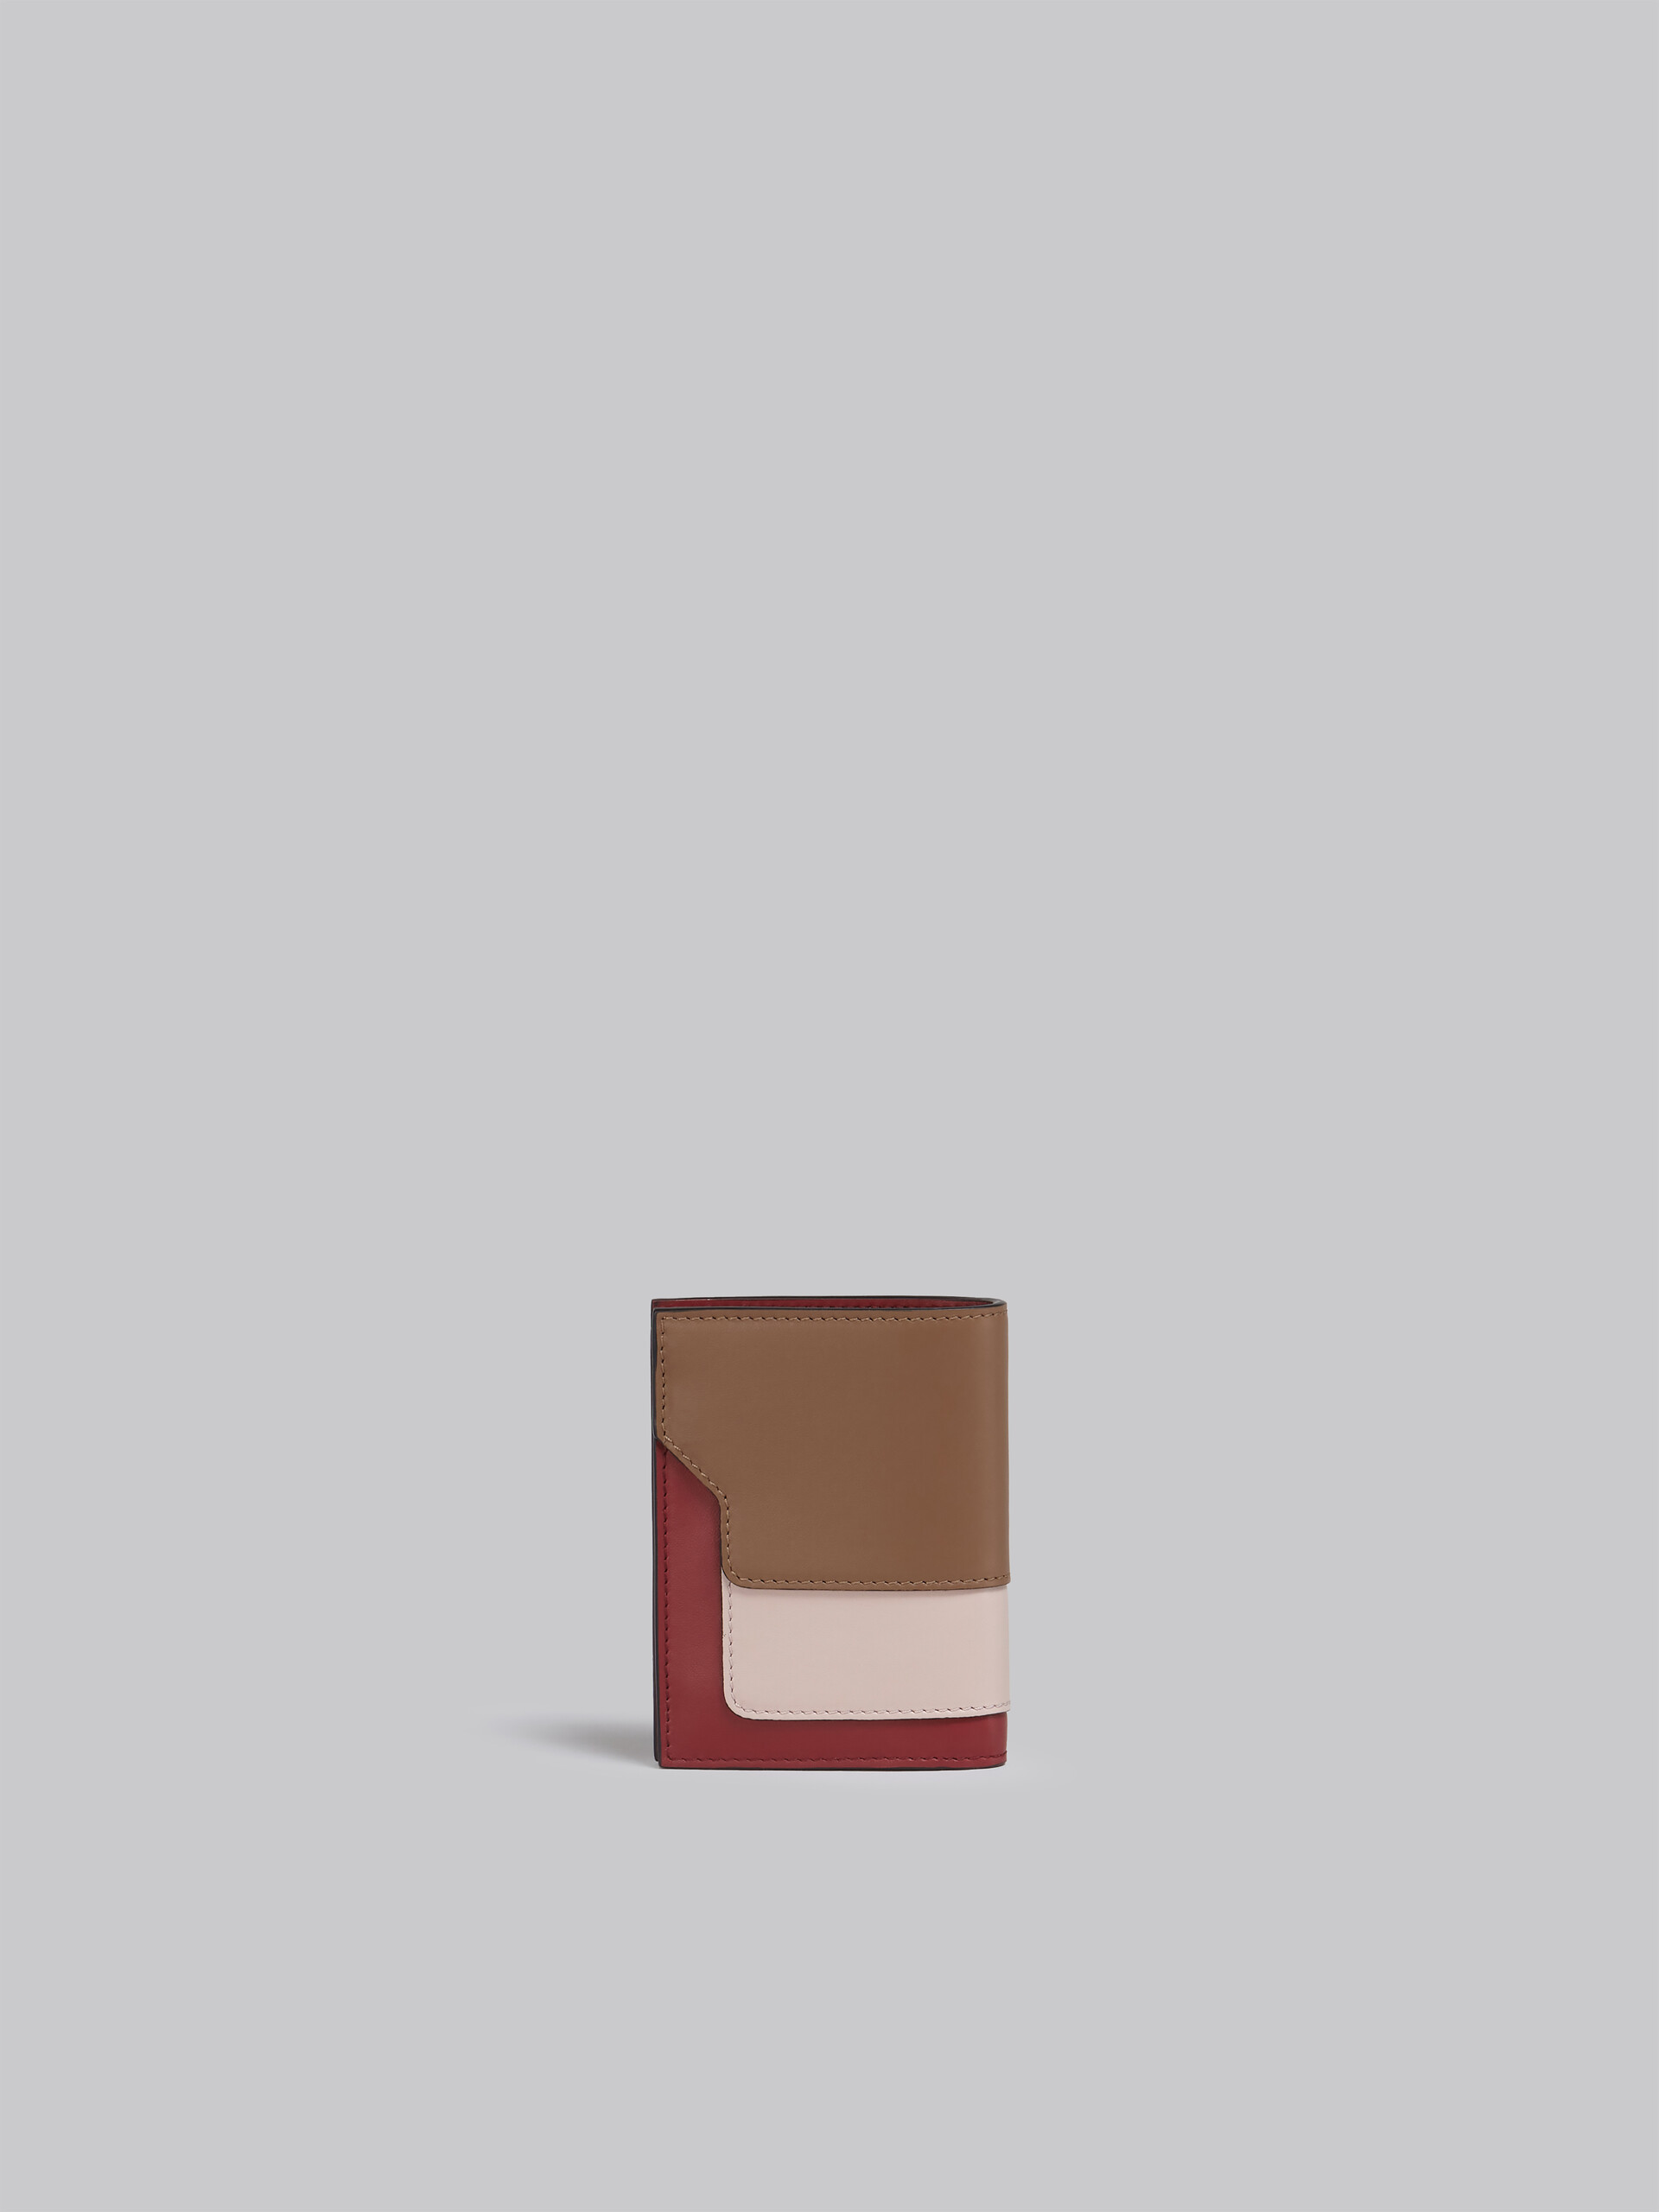 Portafoglio bi-fold in pelle marrone rosa e bordeaux - Portafogli - Image 3